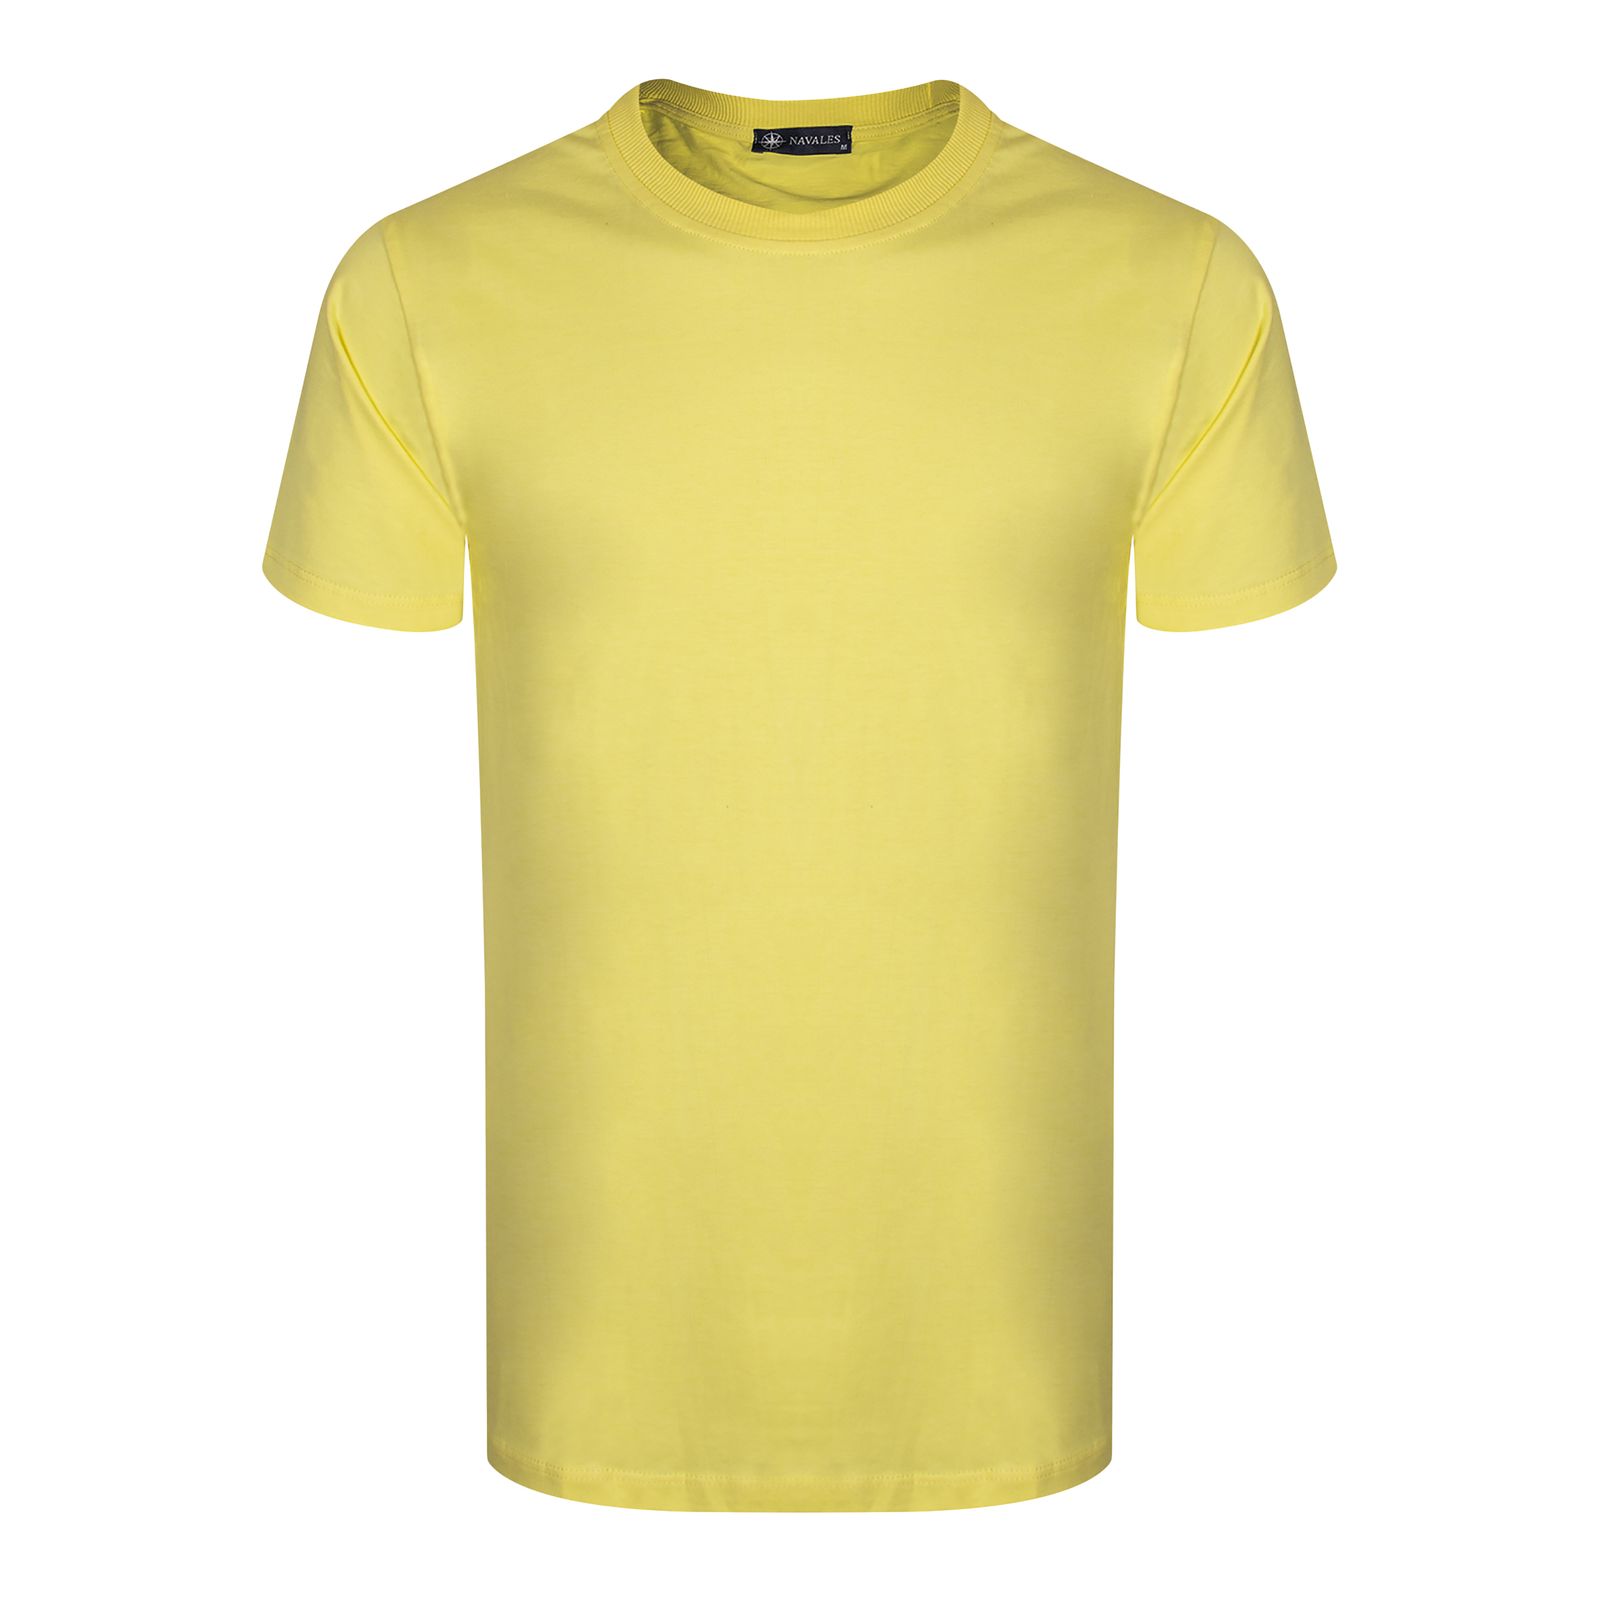 تی شرت آستین کوتاه مردانه ناوالس مدل OCEAN S/S TEES رنگ زرد -  - 1